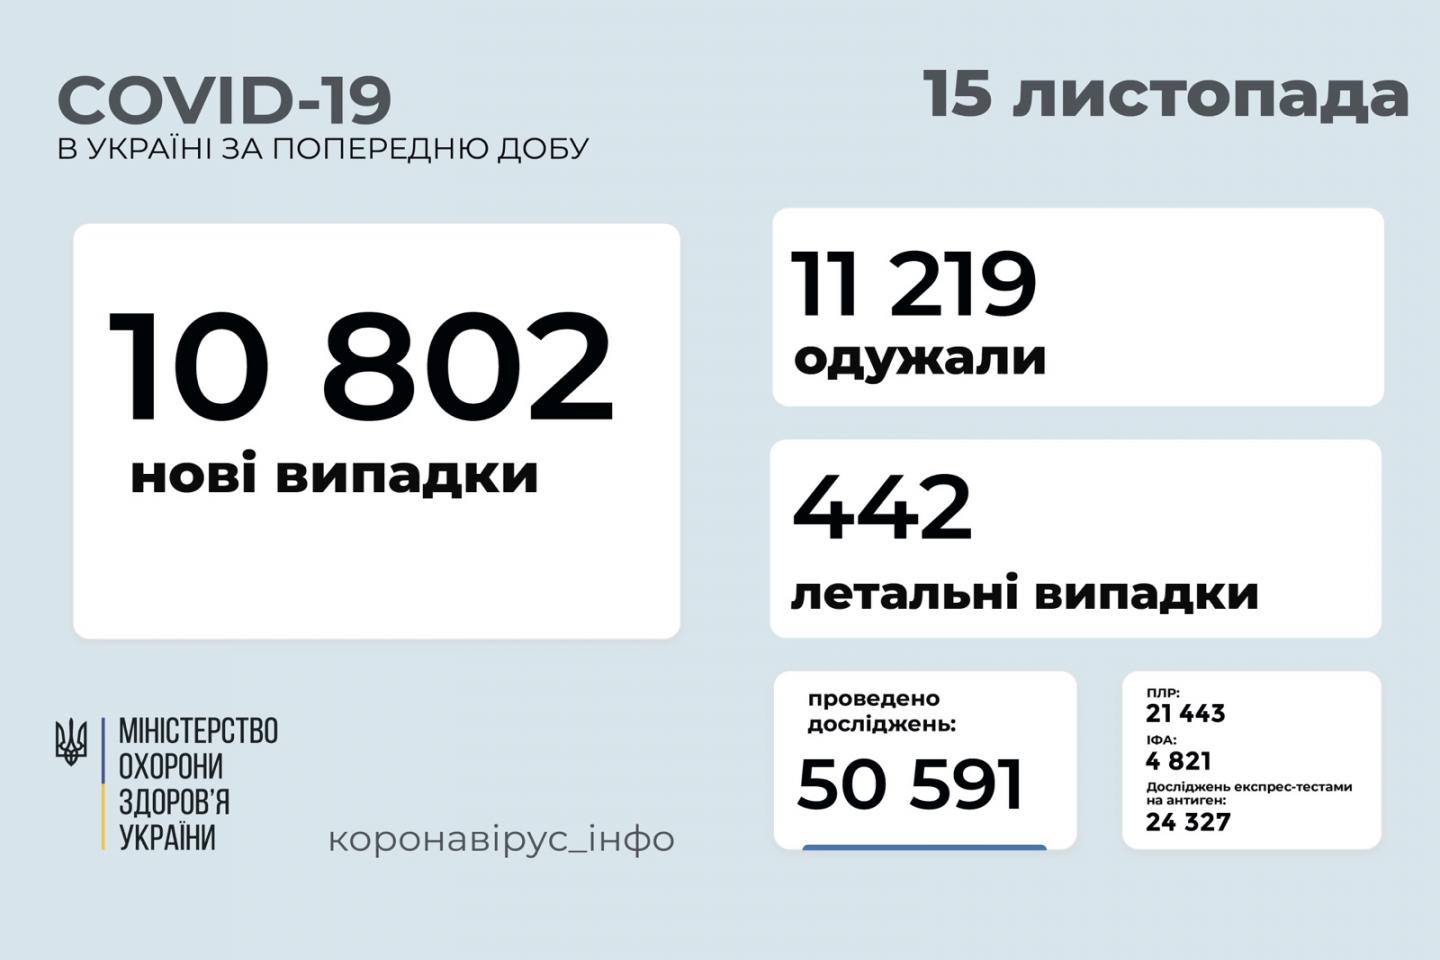 http://dunrada.gov.ua/uploadfile/archive_news/2021/11/15/2021-11-15_9094/images/images-22566.jpg